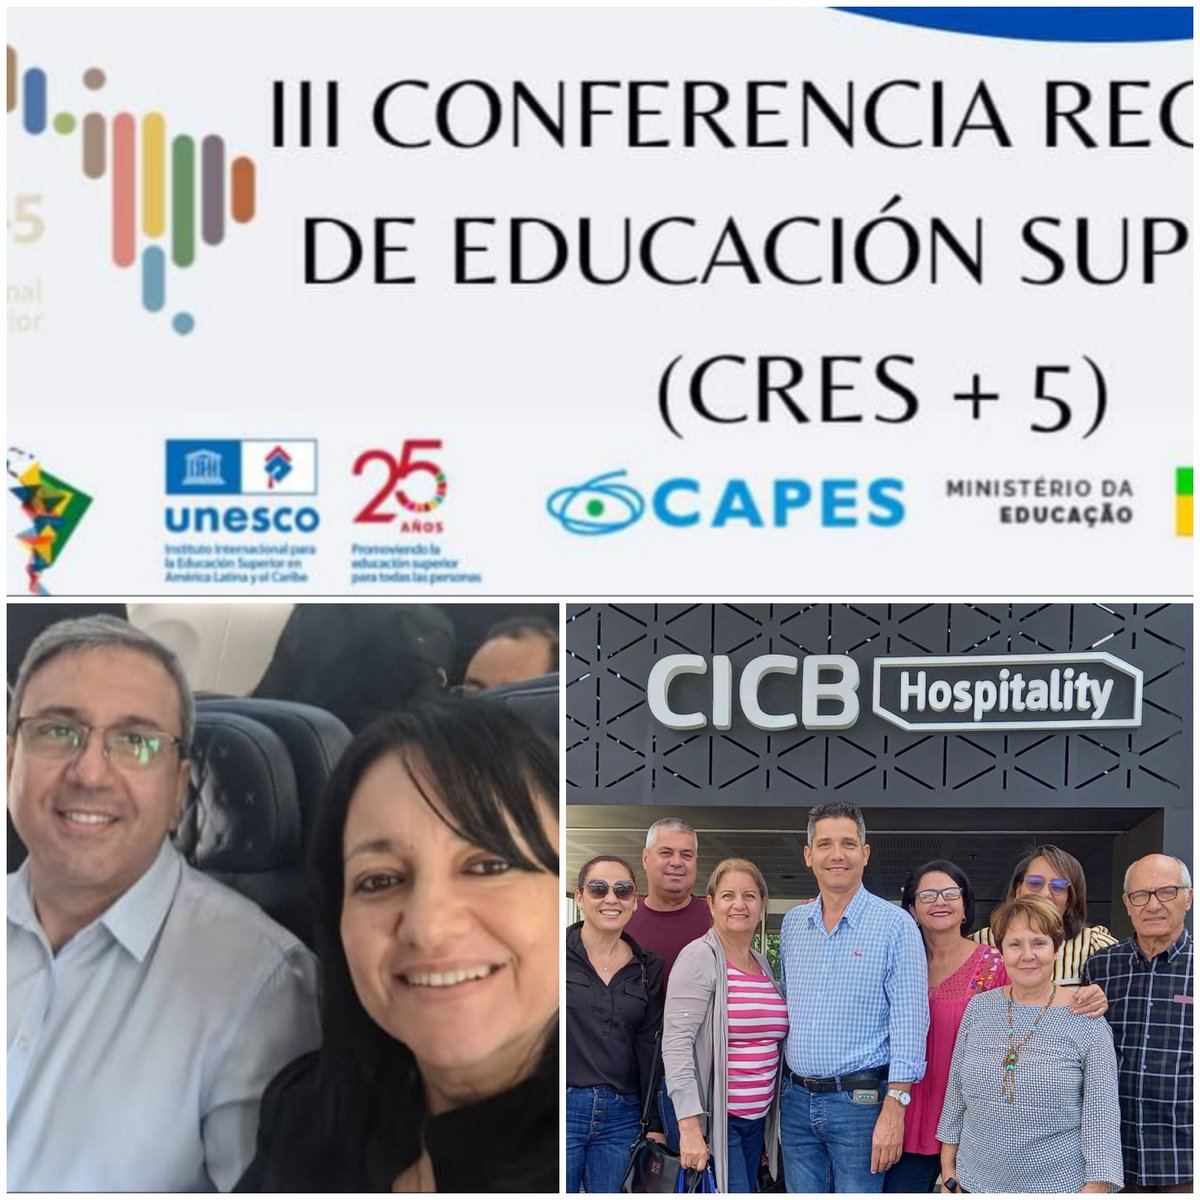 La delegación del Ministerio de Educación Superior de la República de Cuba a la Conferencia Regional de Educación Superior CRES+5 está en Brasilia Se inician los encuentros de trabajo entre delegaciones participantes @CubaMES @unesco_iesalc